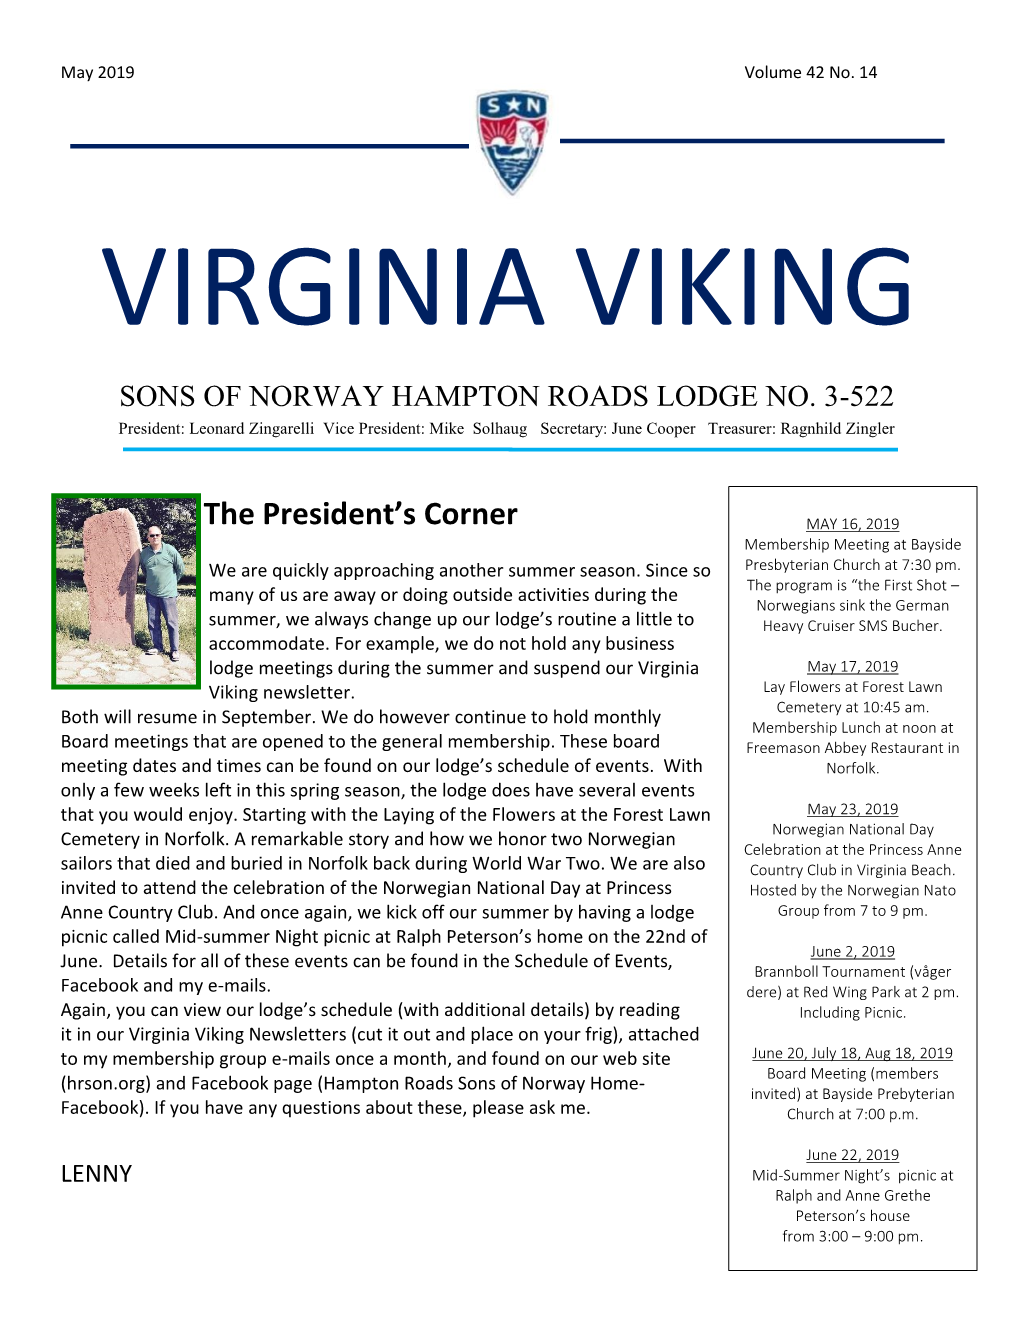 Virginia Viking May 2019